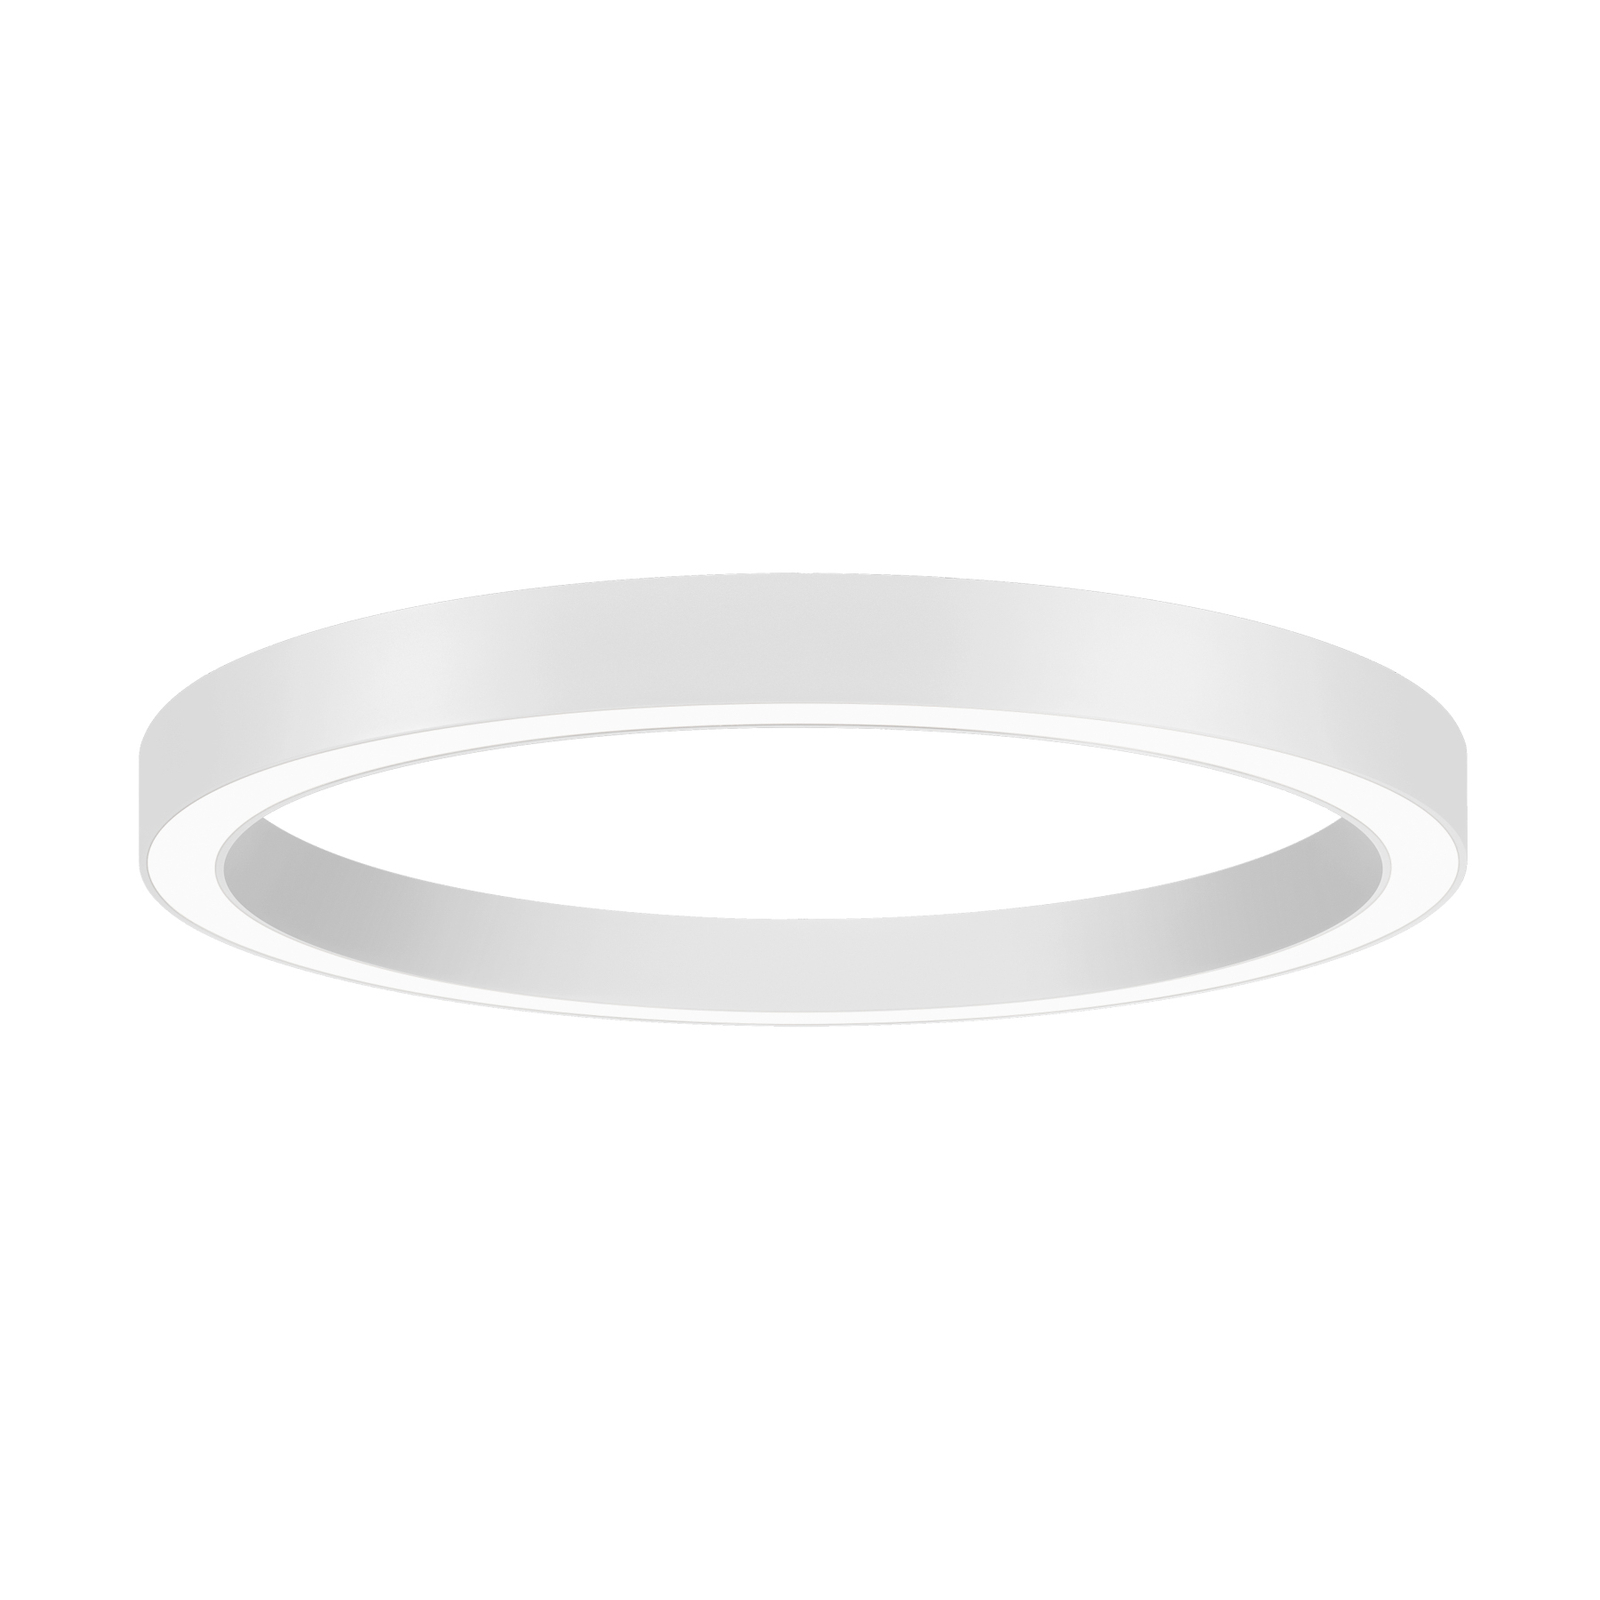 BRUMBERG Biro Kruhový prstenec Ø 60 cm, 40 W, zapnutý/vypnutý, biely, 830